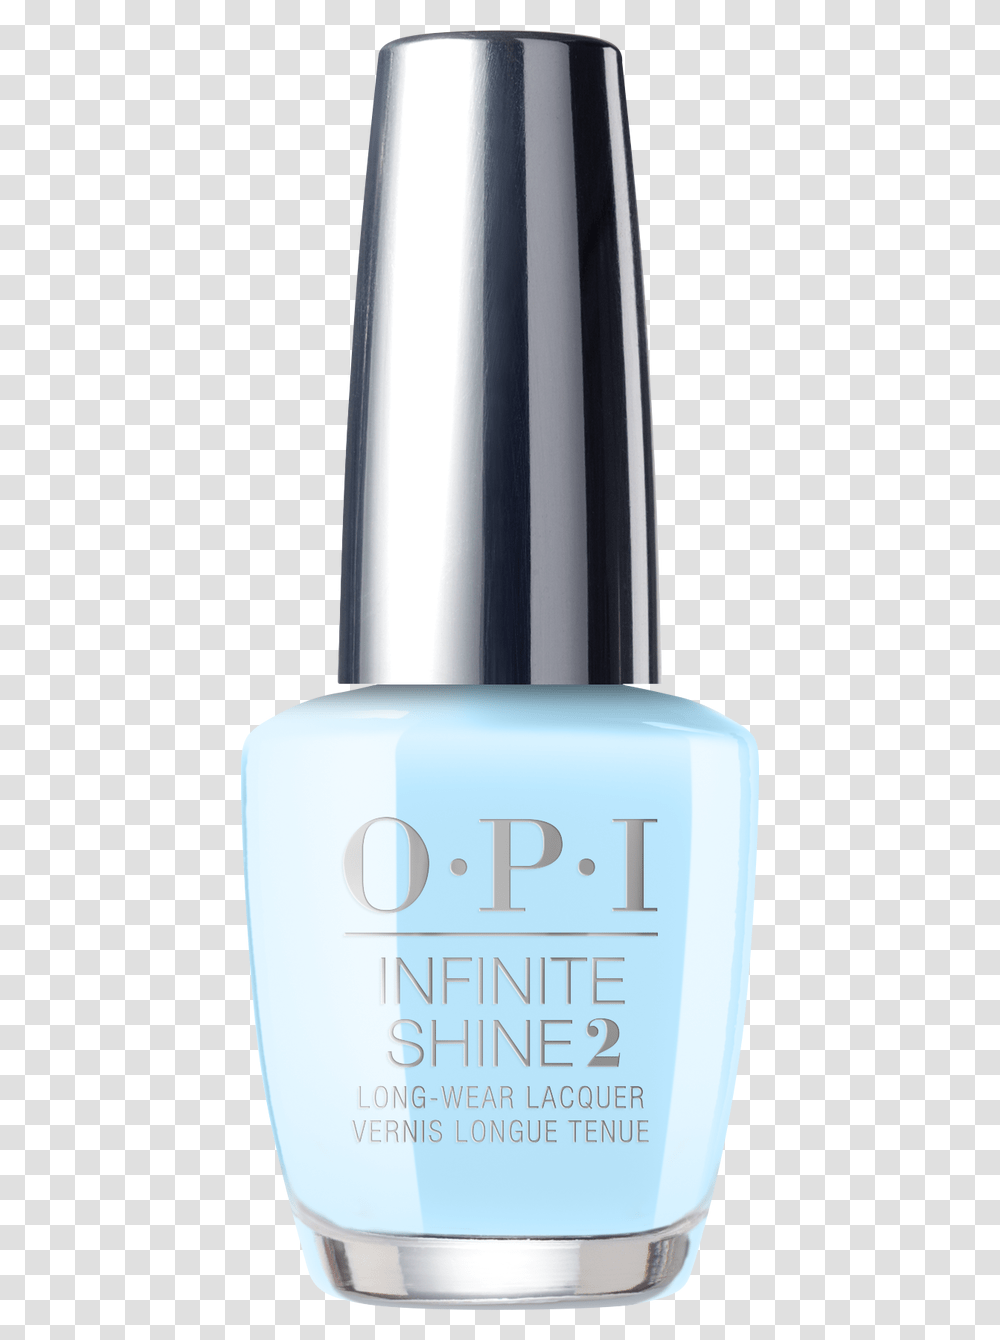 Opi Infinite Shine Opi Infinite Shine Don't Bossa Nova, Cosmetics, Mobile Phone, Electronics, Cell Phone Transparent Png